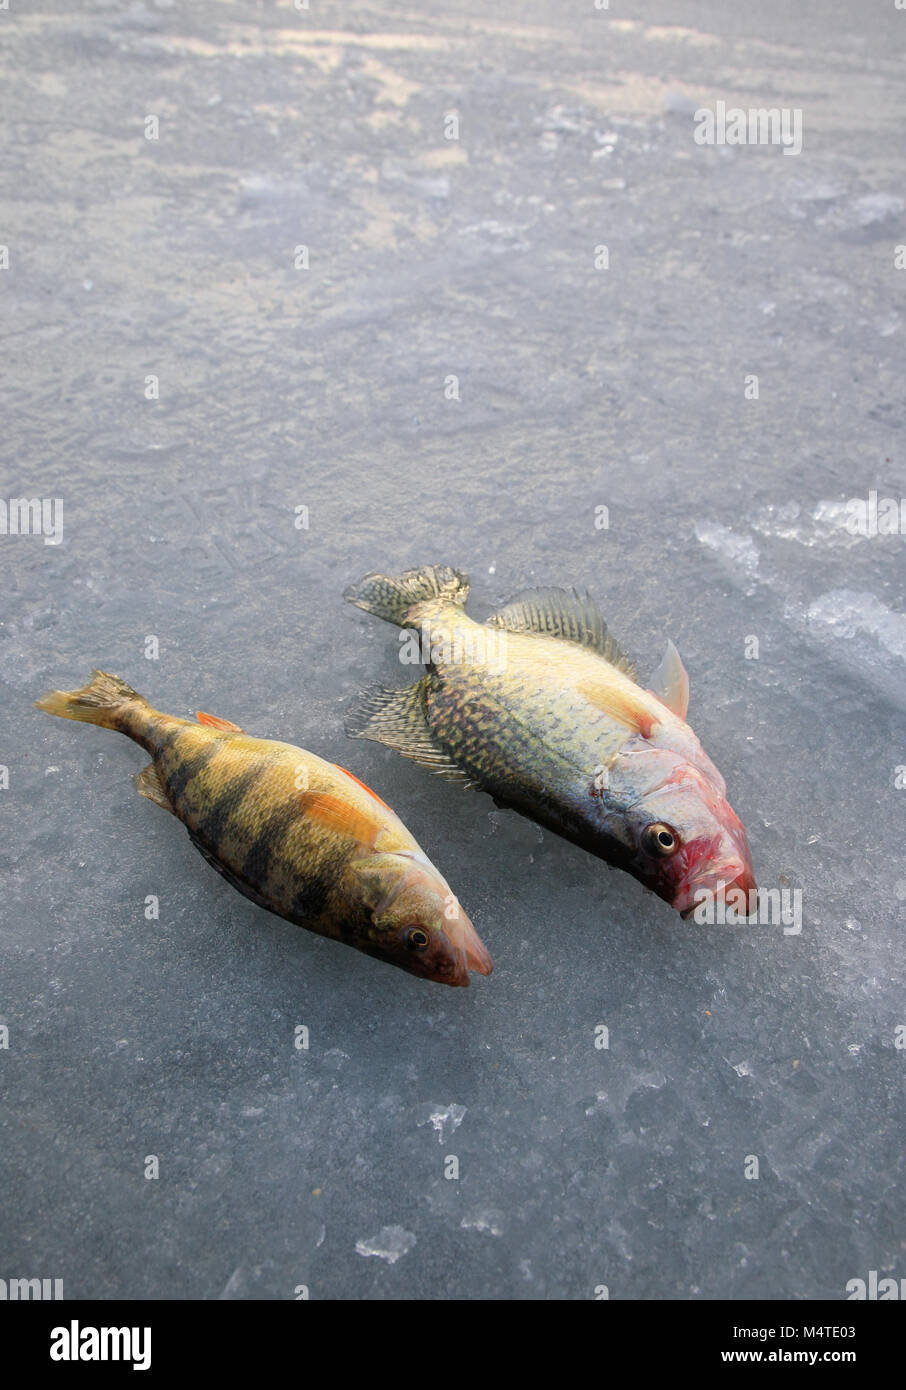 Crochet de pêche de glace réussie couché sur lac couvert de glace Banque D'Images